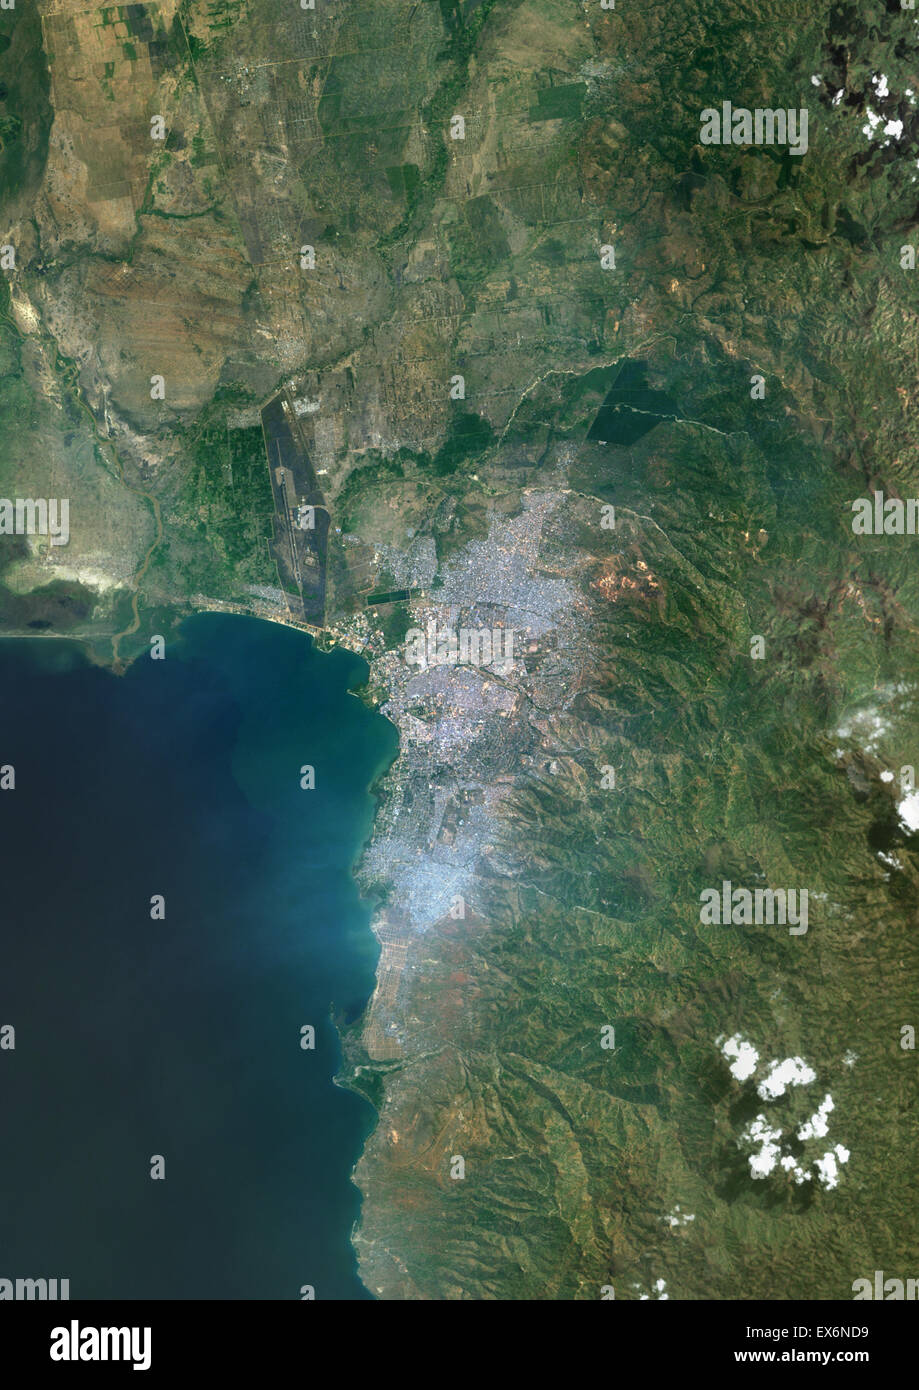 Colore immagine satellitare di Bujumbura, Burundi. Immagine presa il 1 agosto 2014 con il satellite Landsat 8 dati. Foto Stock